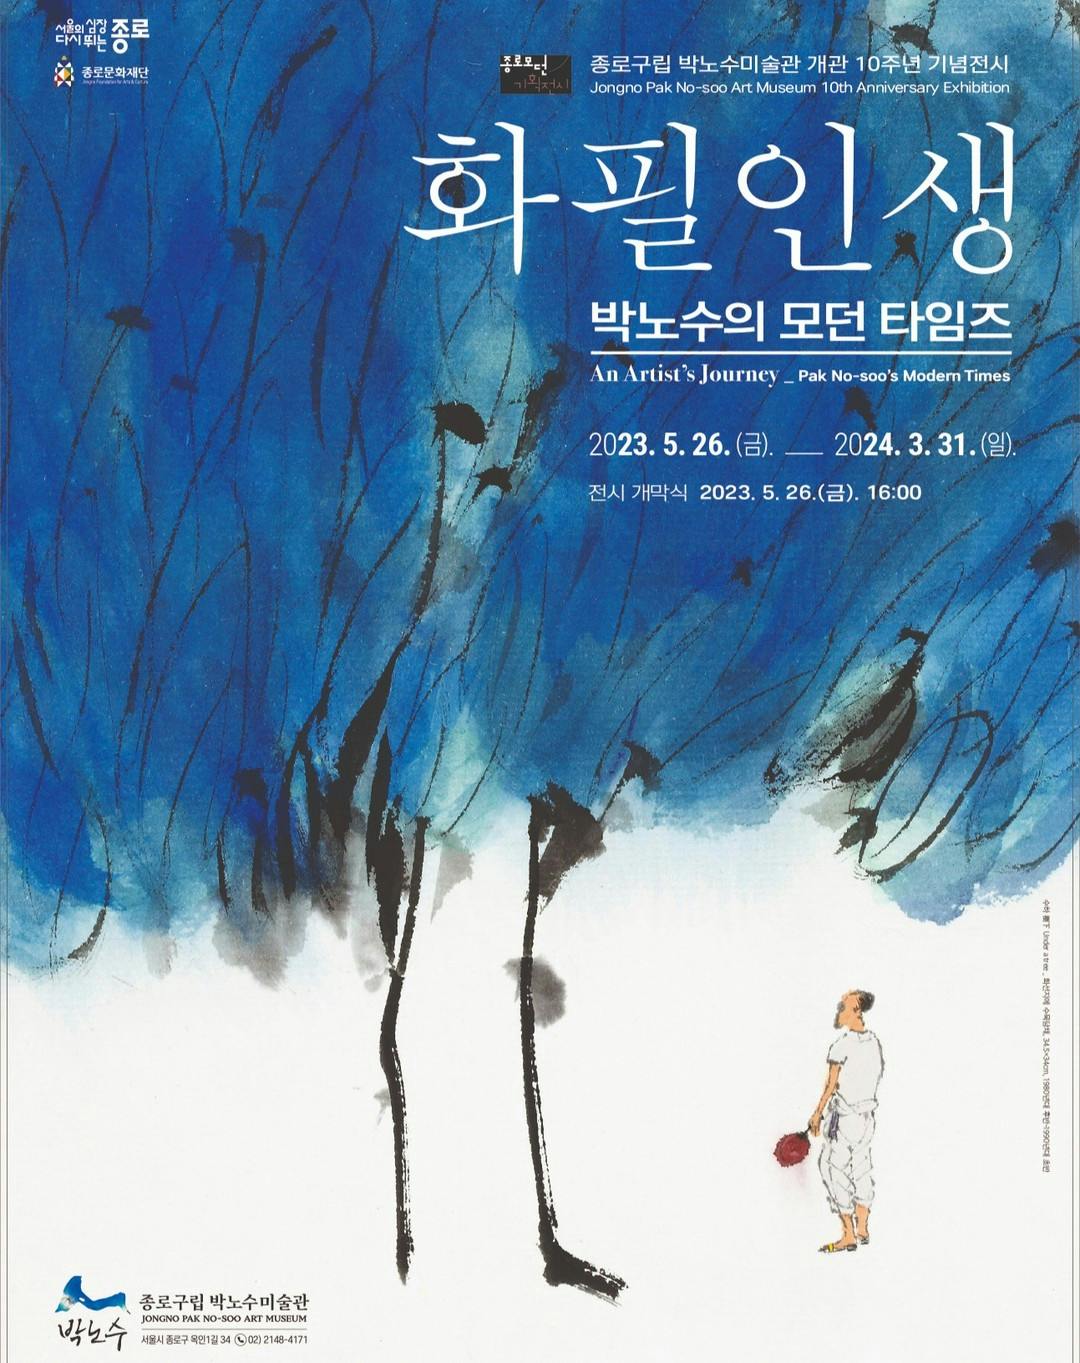 An Artist's Journey <Park No-soo's Modern Times>